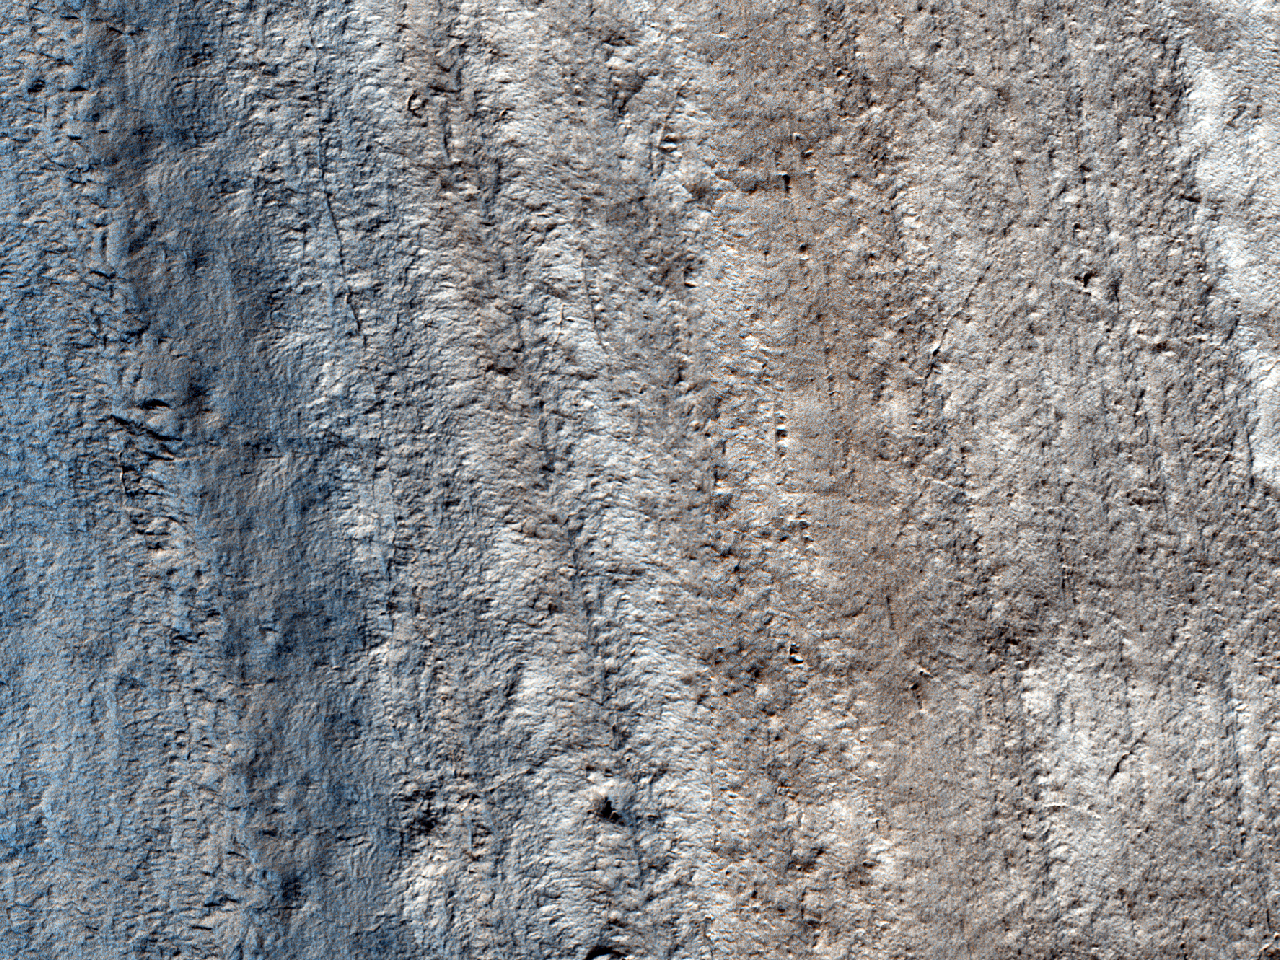 Wschodnia ściana Chasma Australe wzdłuż skraju Promethei Lingula